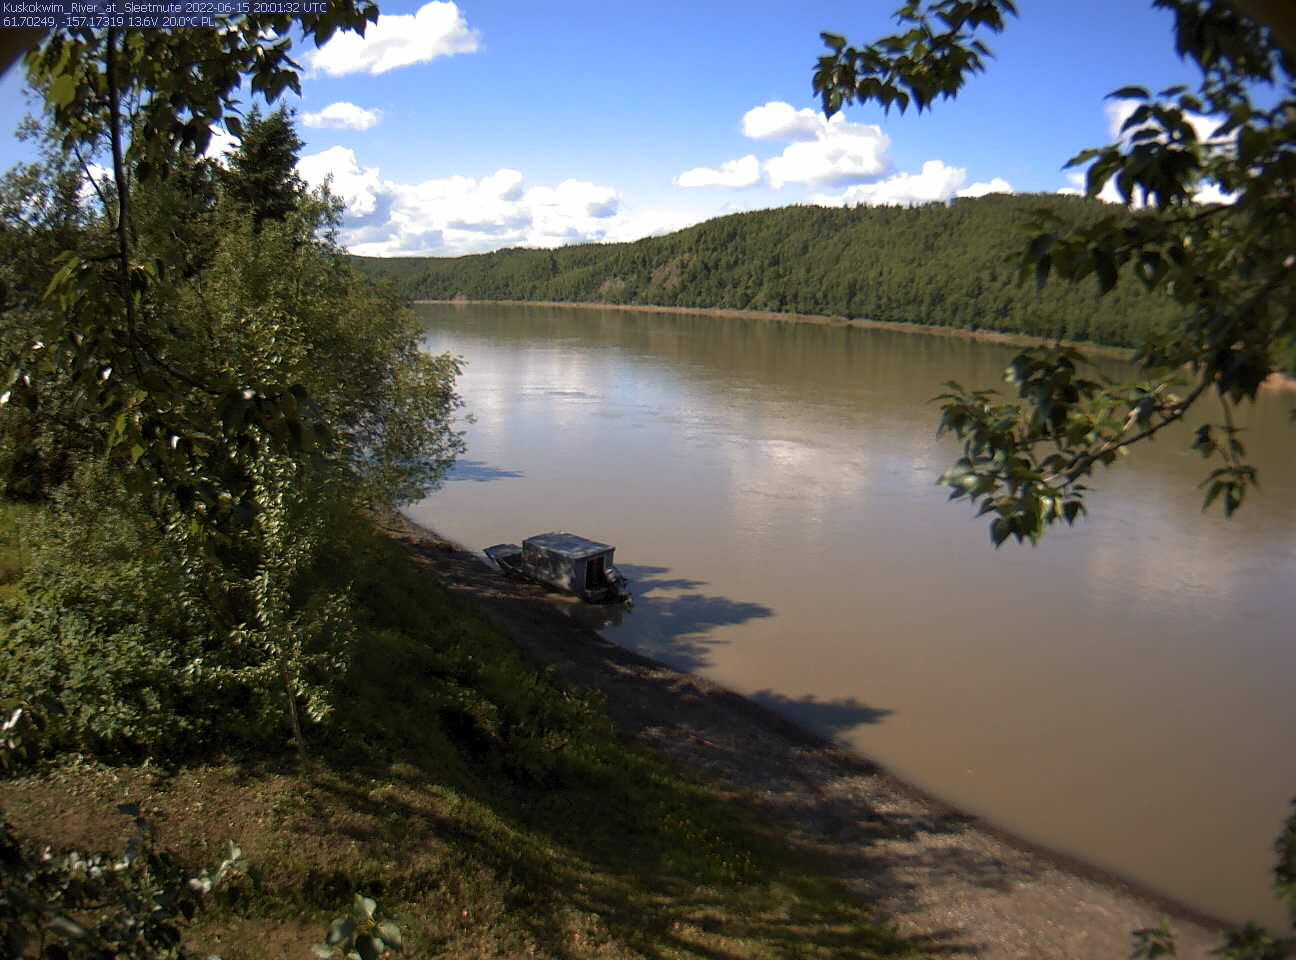 Kuskokwim_River_at_Sleetmute_20220615200133.jpg